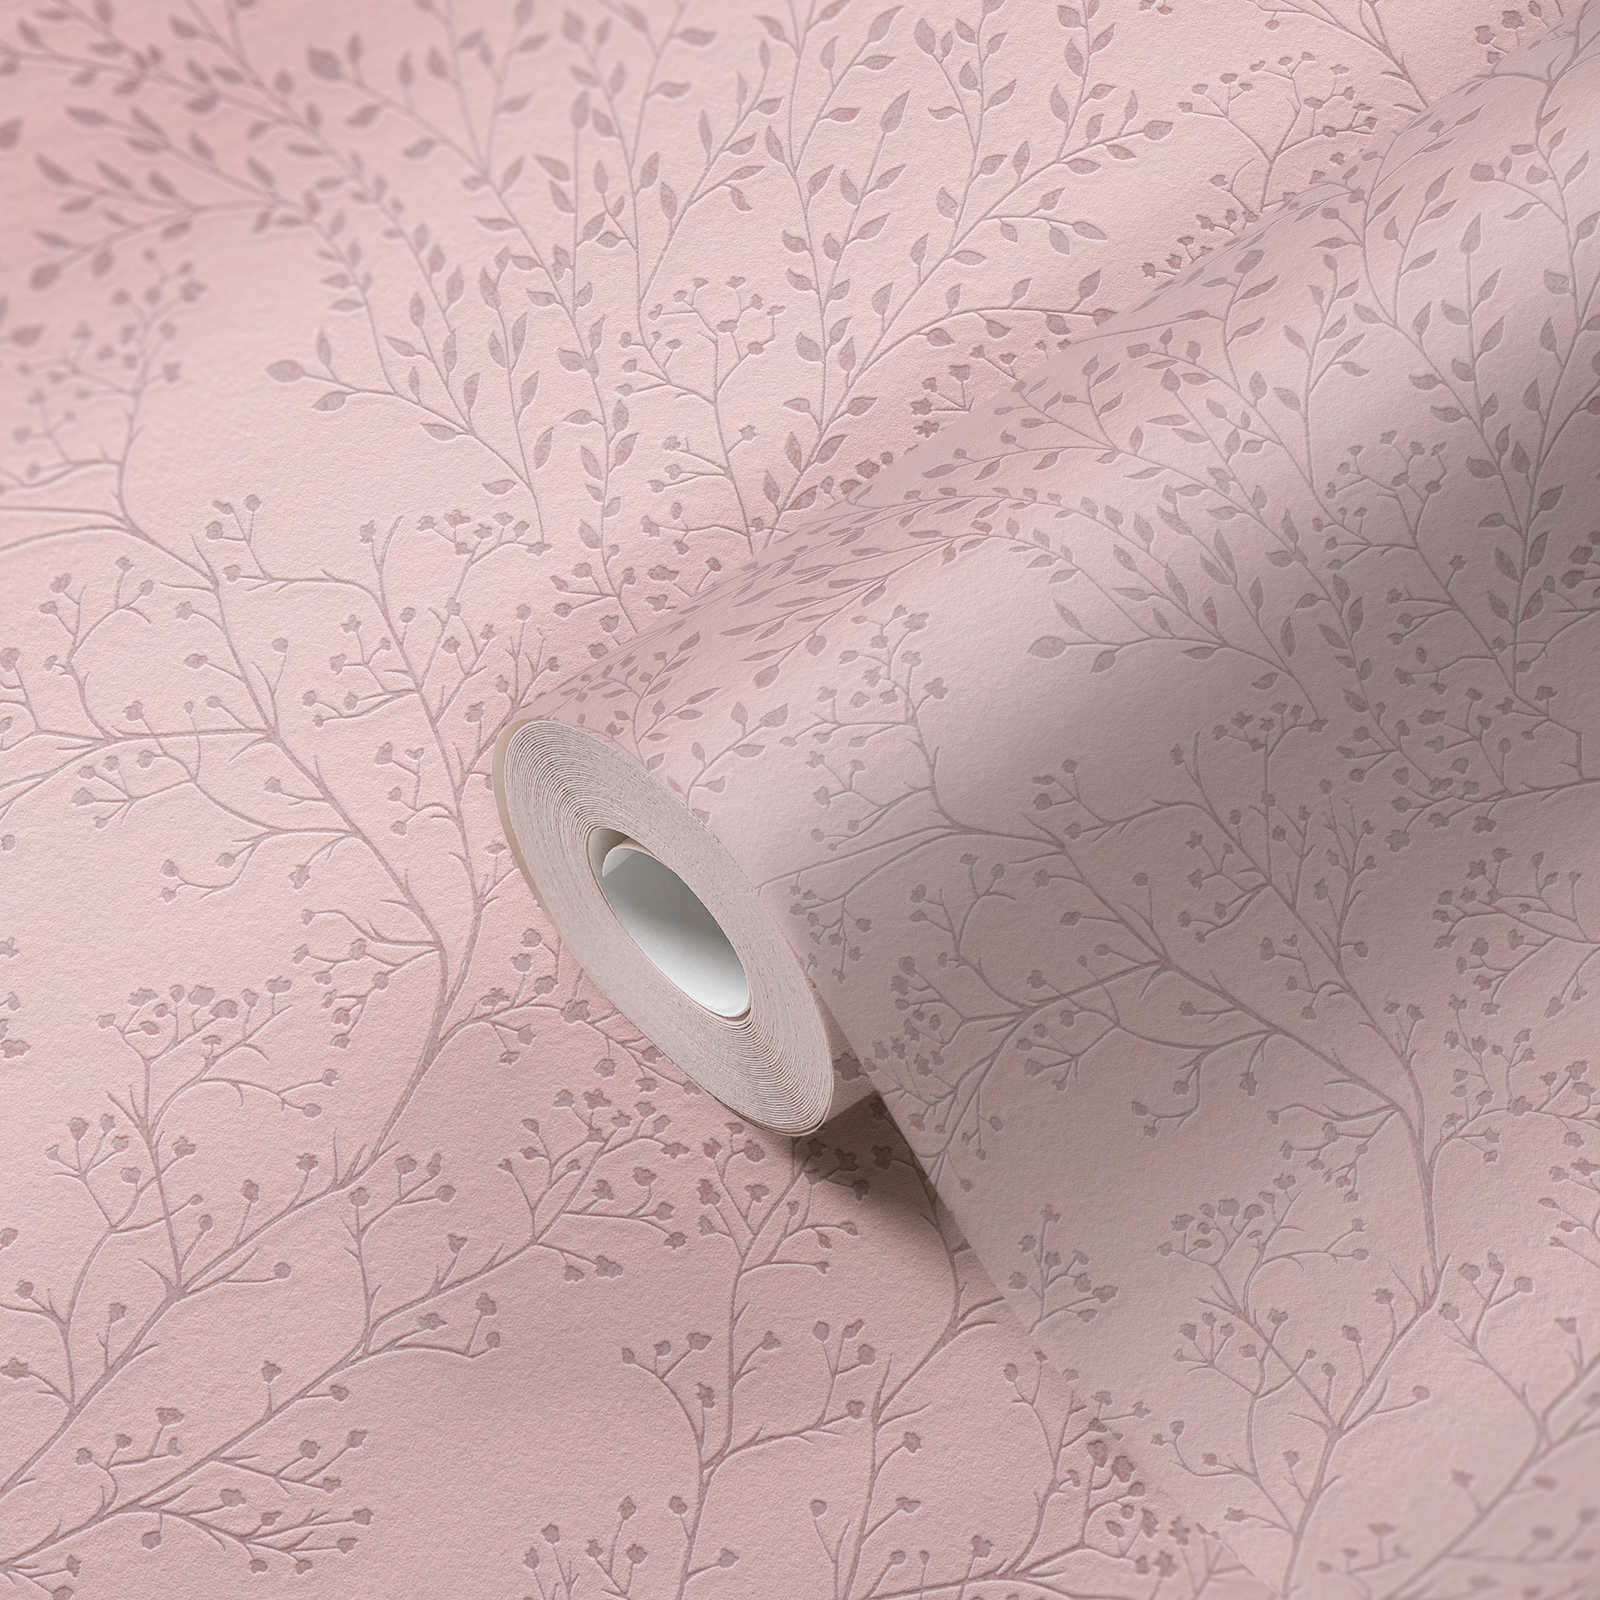             Effen roze behang met bladerenpatroon, glans & textuureffect
        